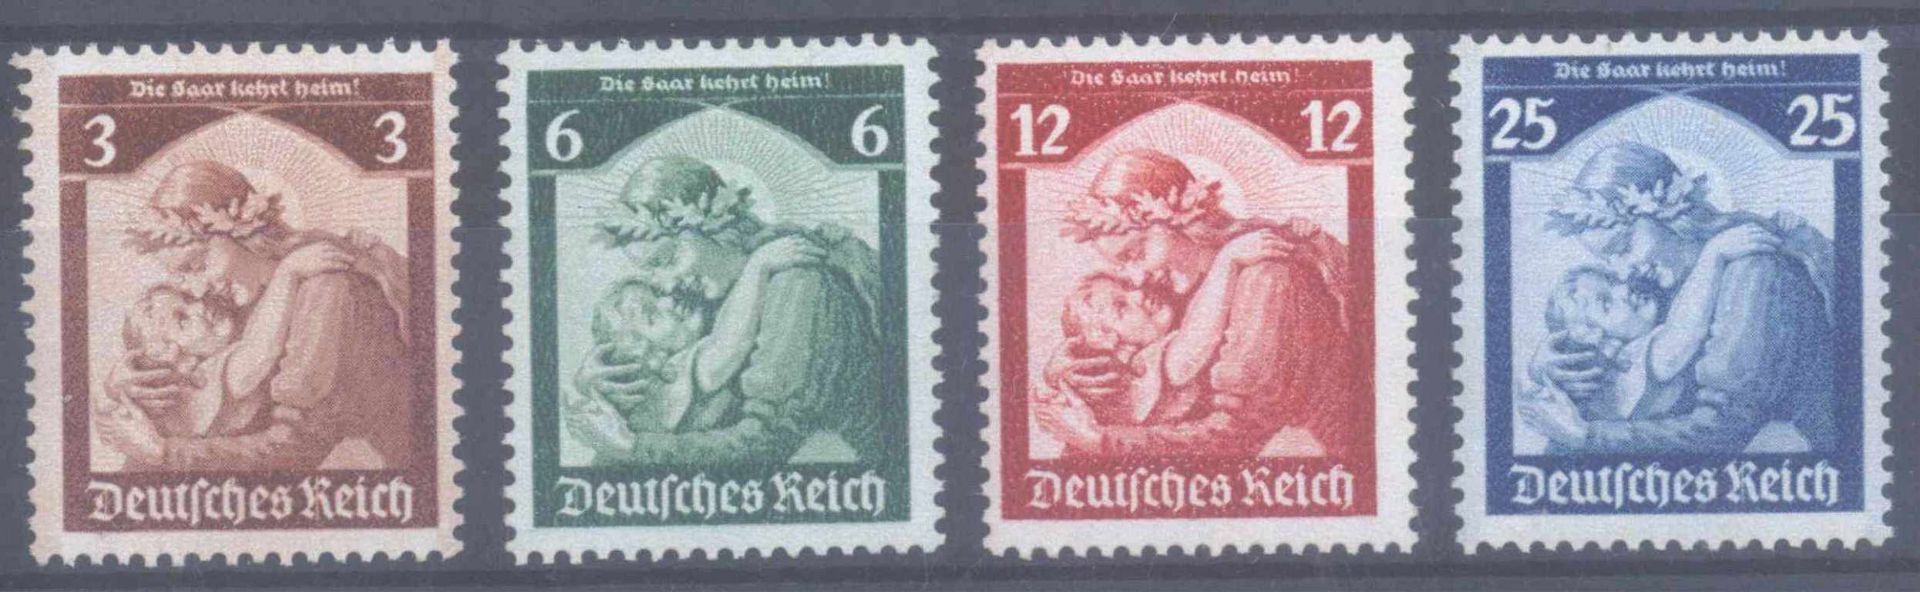 1935 III. REICH, SaarMichelnummern 565-568, postfrisch Luxus, Katalogwert120,- Euro